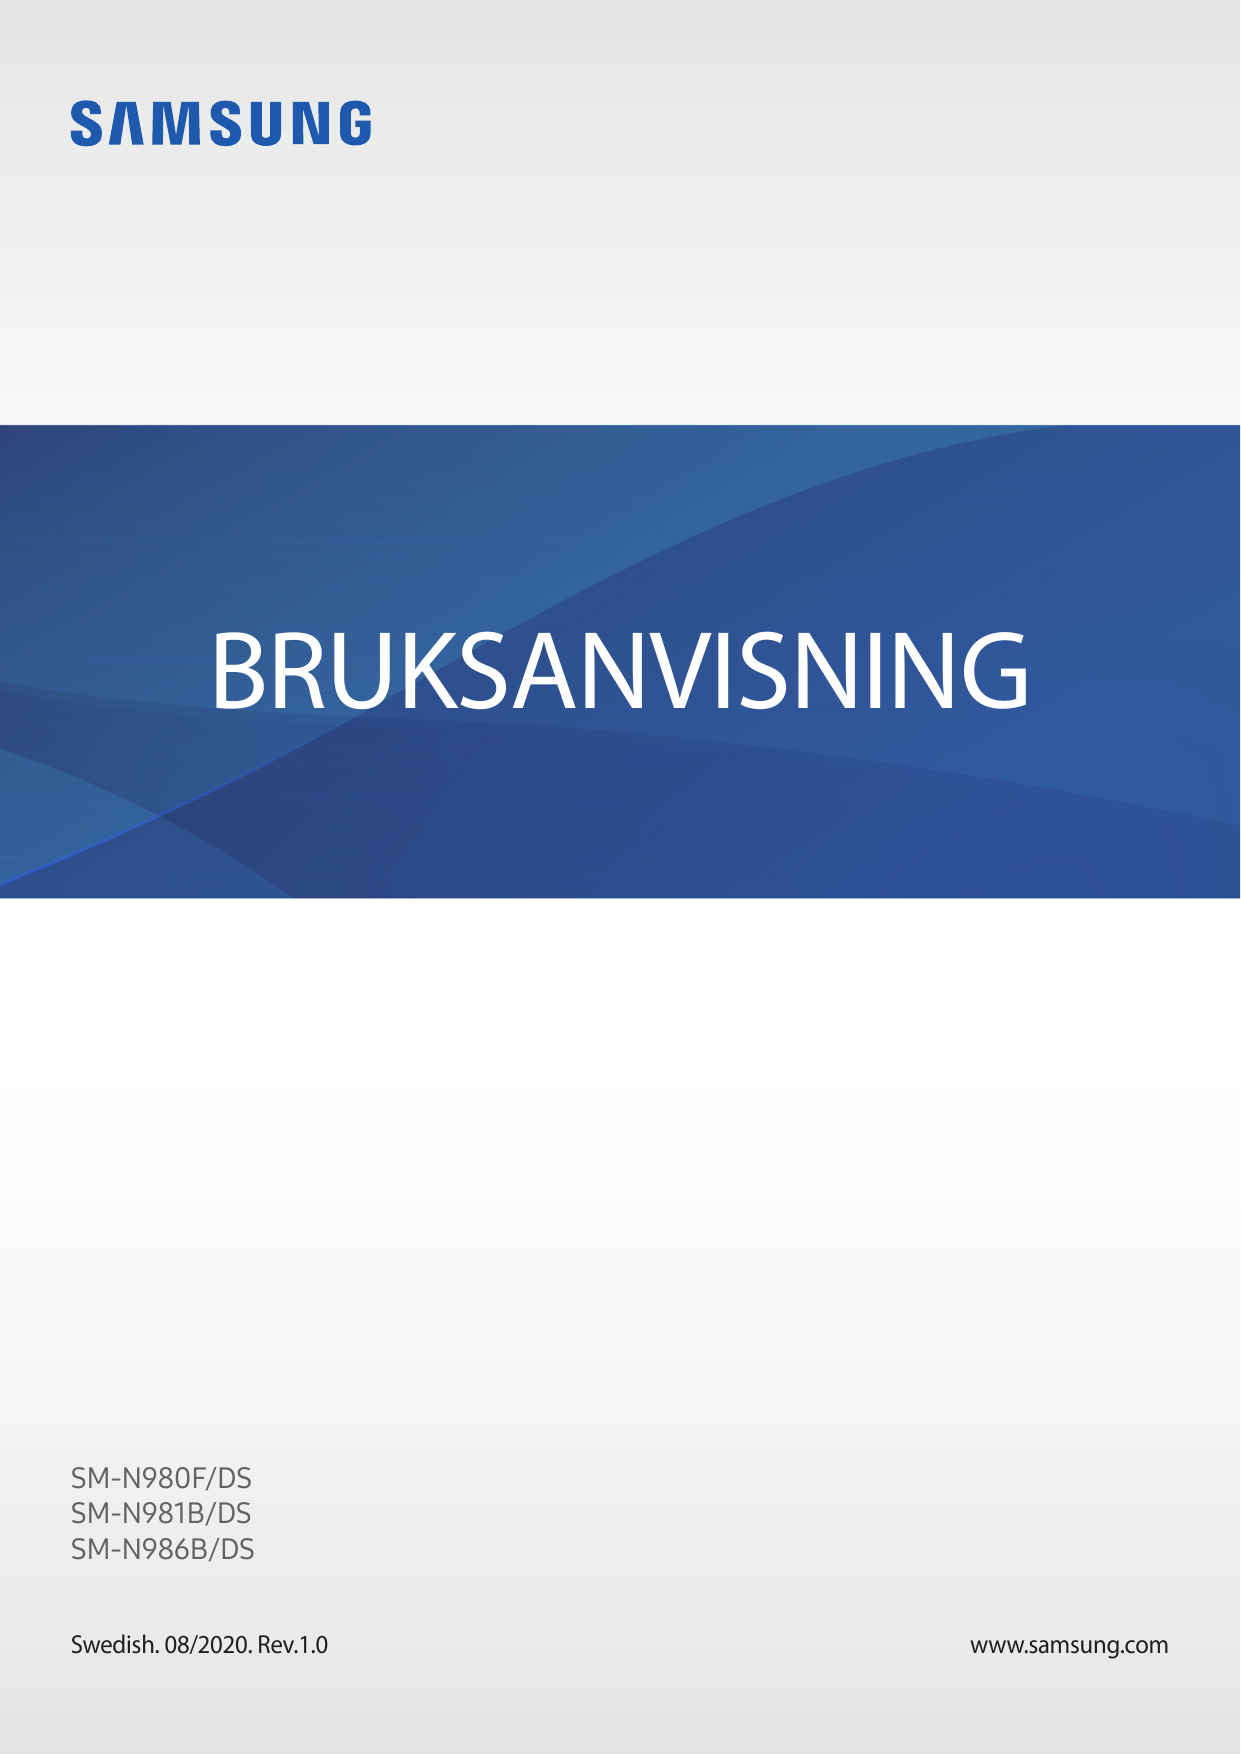 BRUKSANVISNINGSM-N980F/DSSM-N981B/DSSM-N986B/DSSwedish. 08/2020. Rev.1.0www.samsung.com